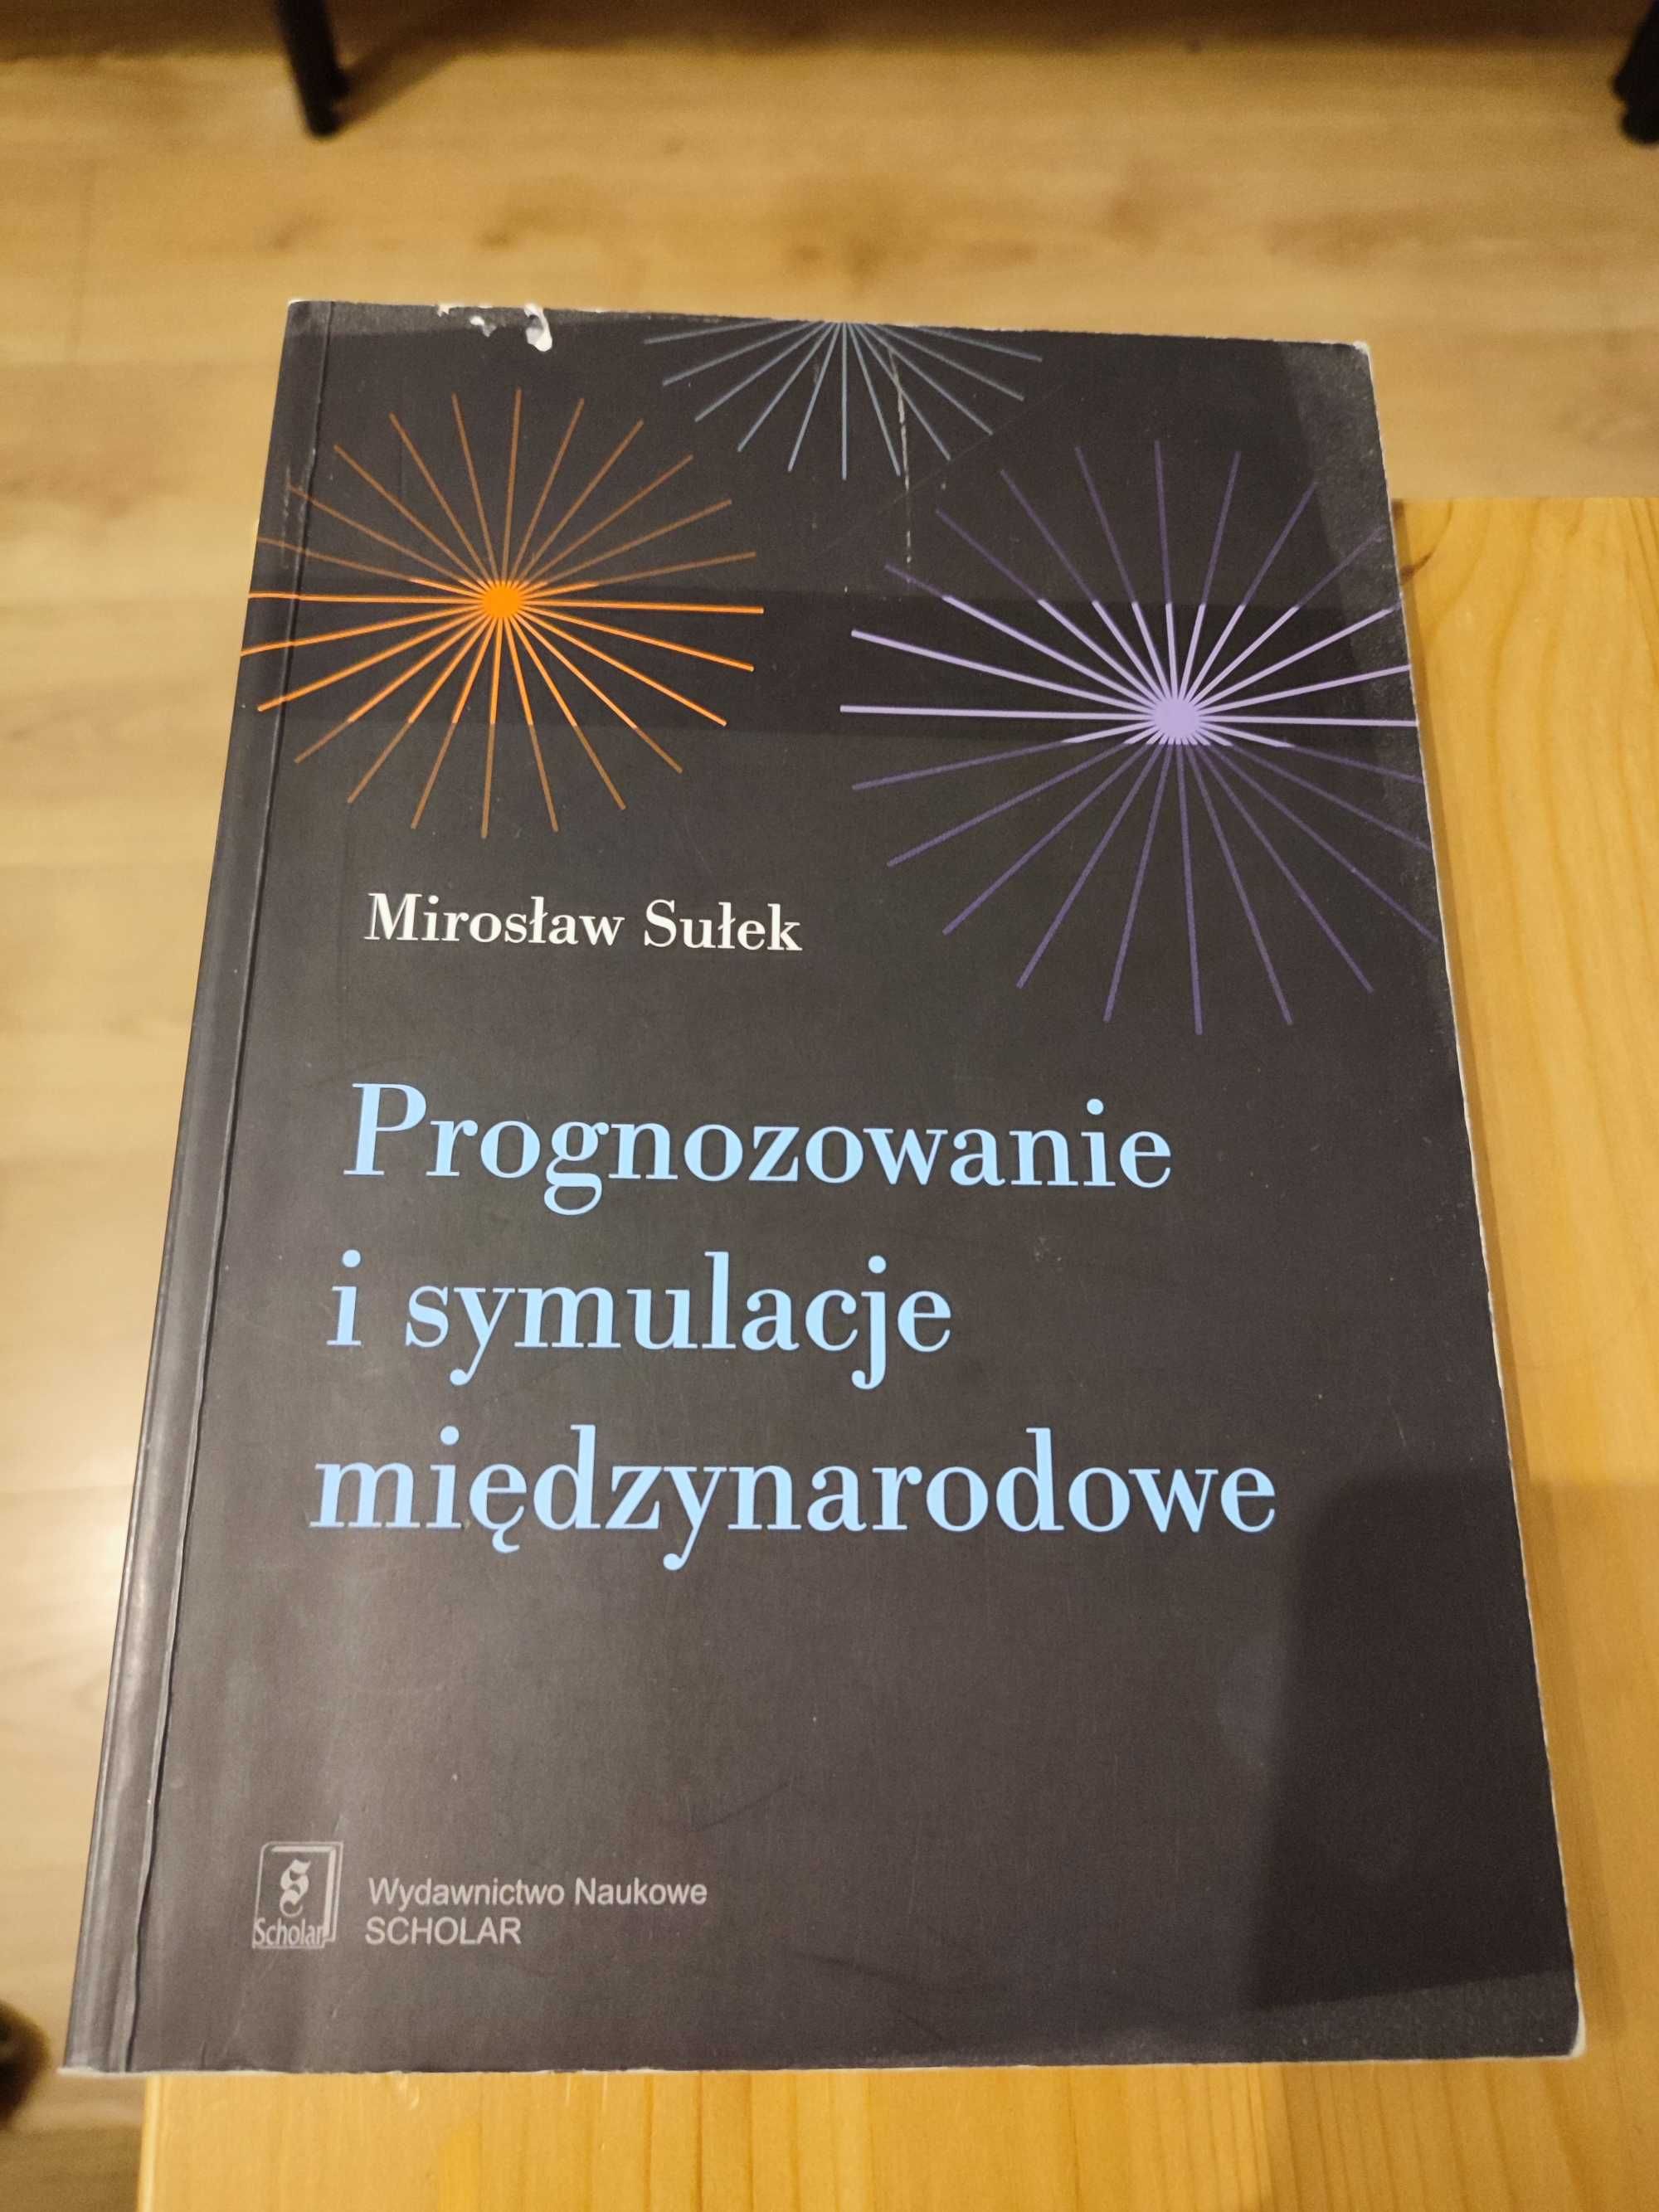 "Prognozowanie i symulacje międzynarodowe" Mirosław Sułek SCHOLAR 2010